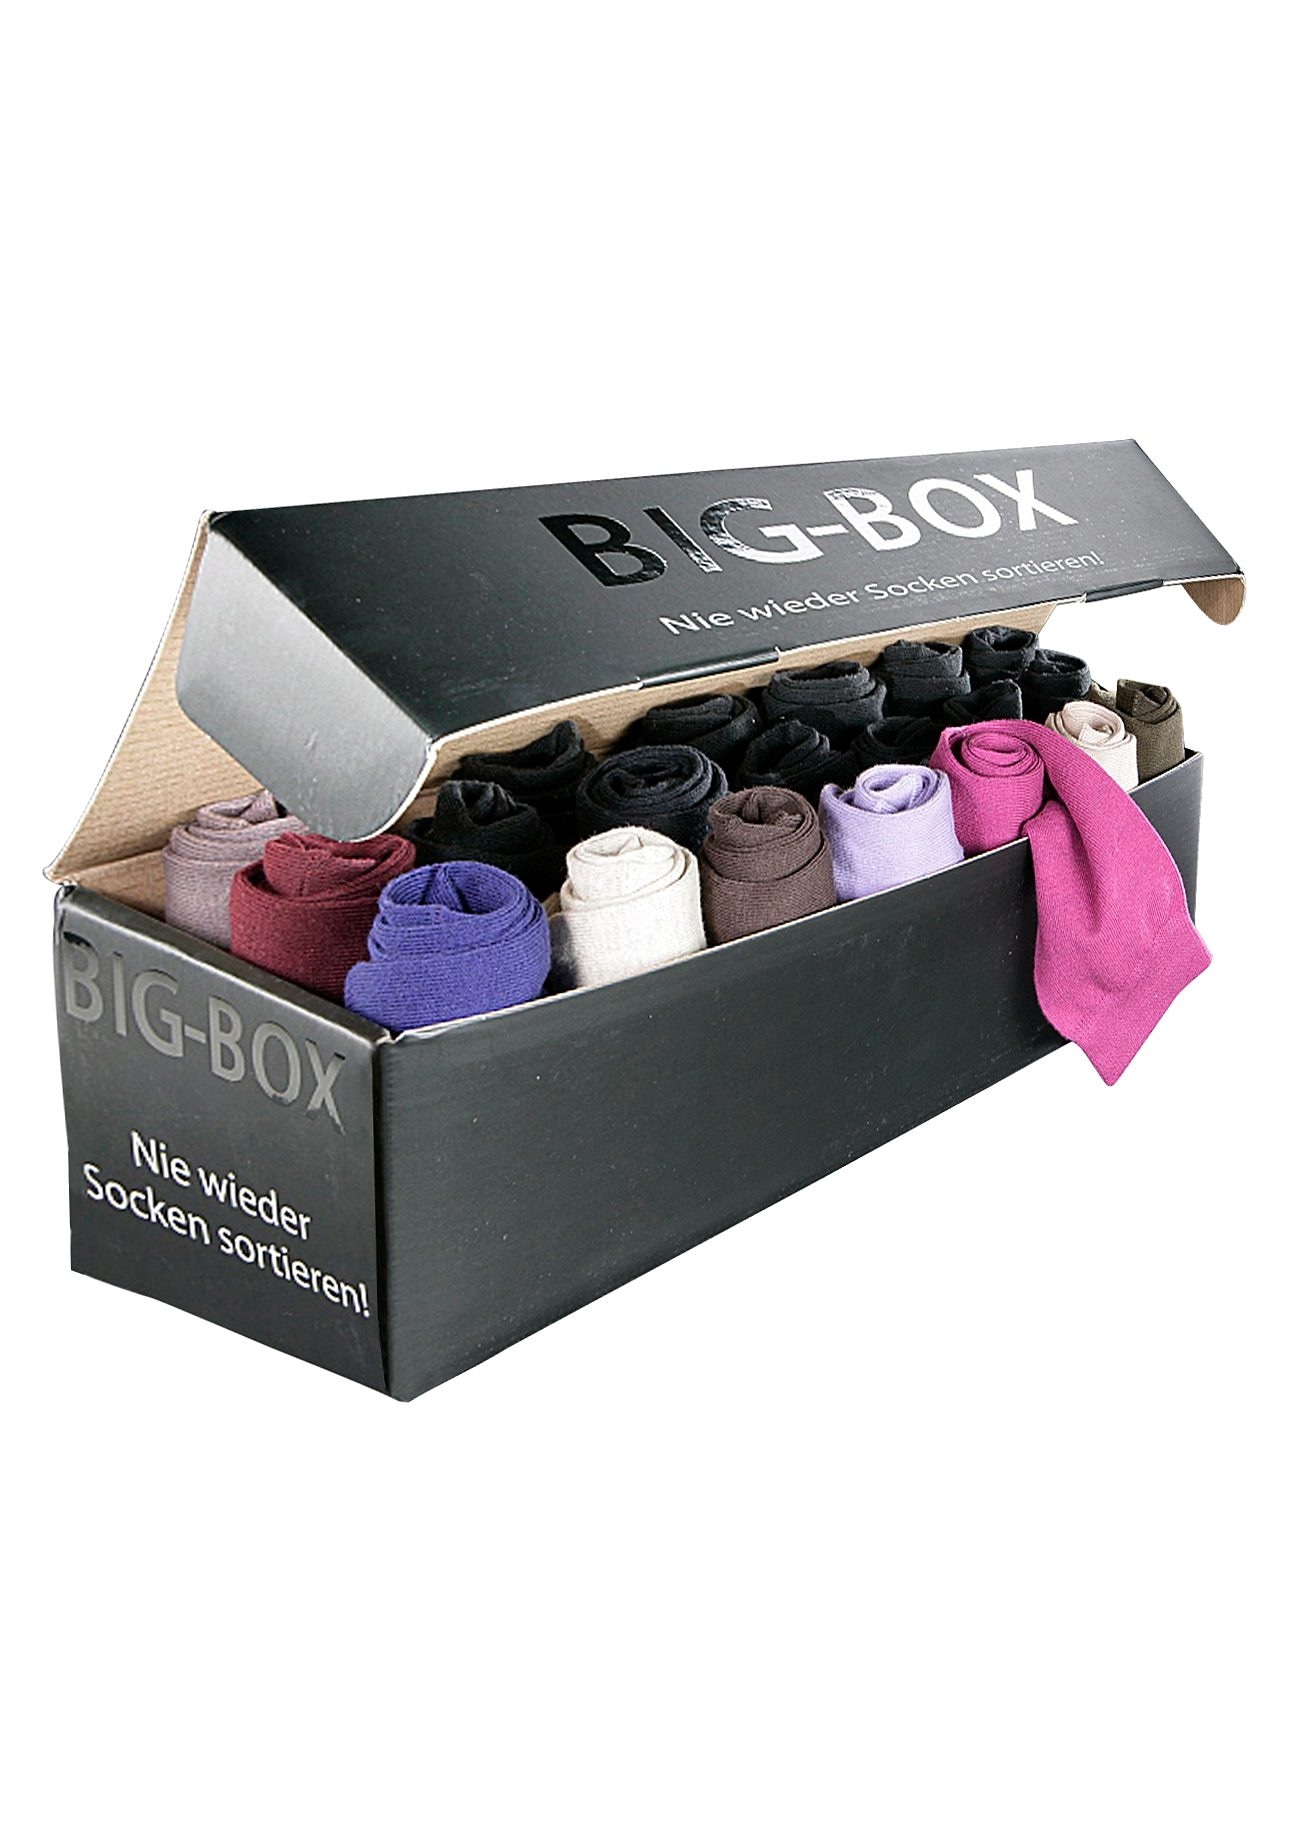 Go in Basicsocken »mit Baumwolle und Komfortbund, ohne drückende Naht«, (Box, 20 Paar), in der großen Big-Box